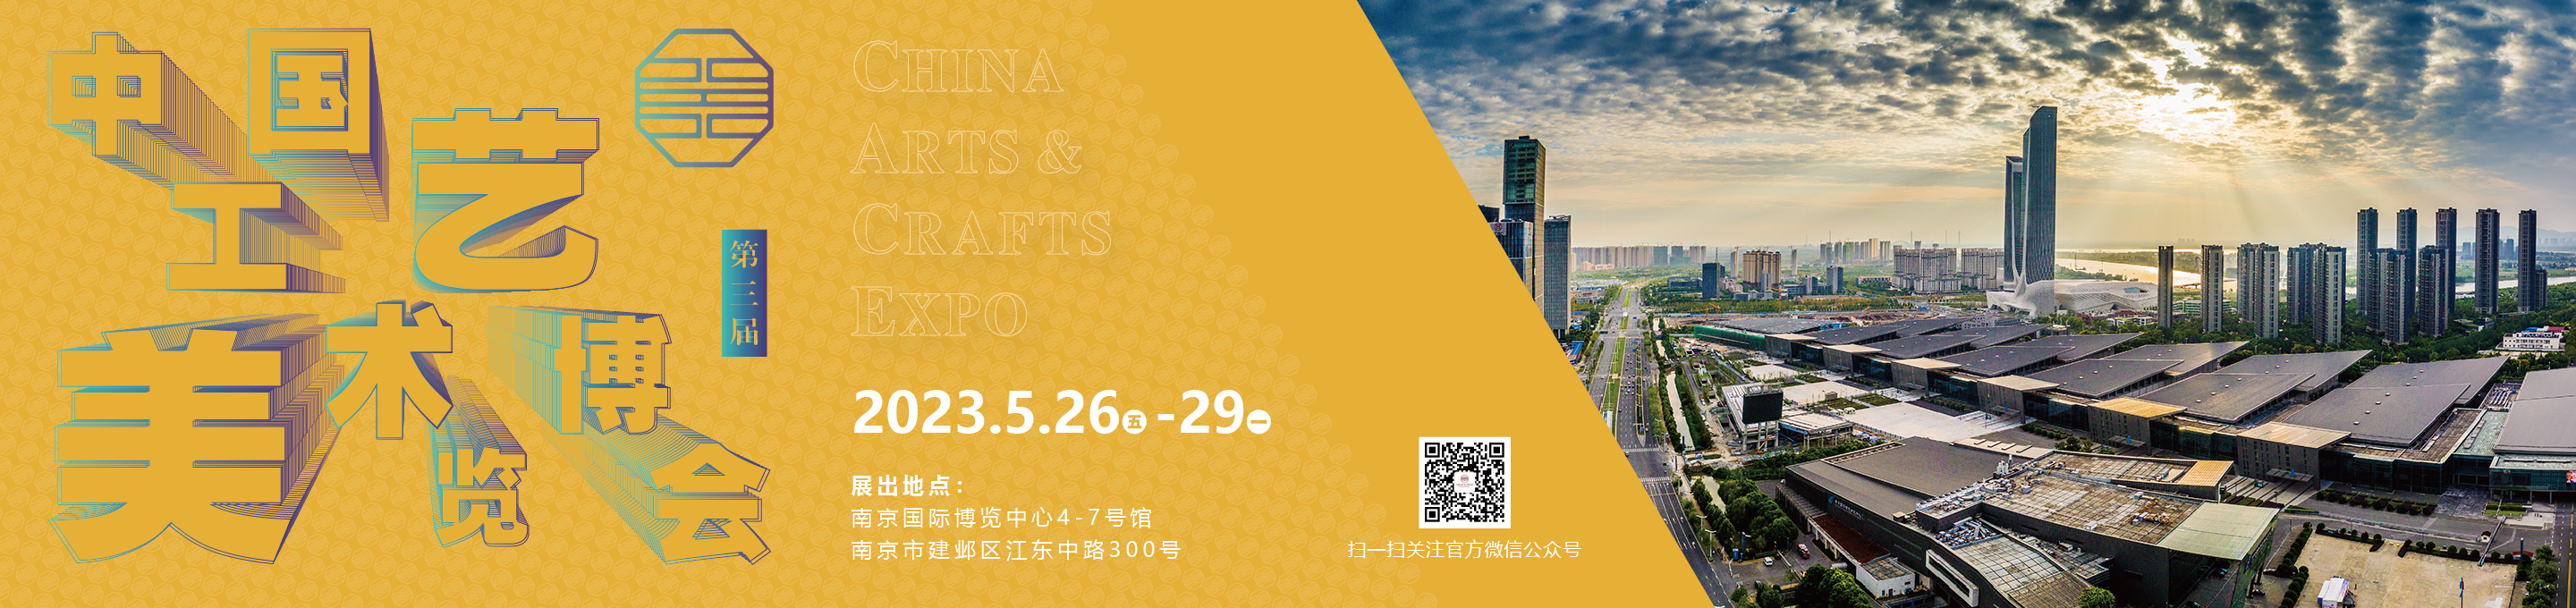 中国工艺美术博览会